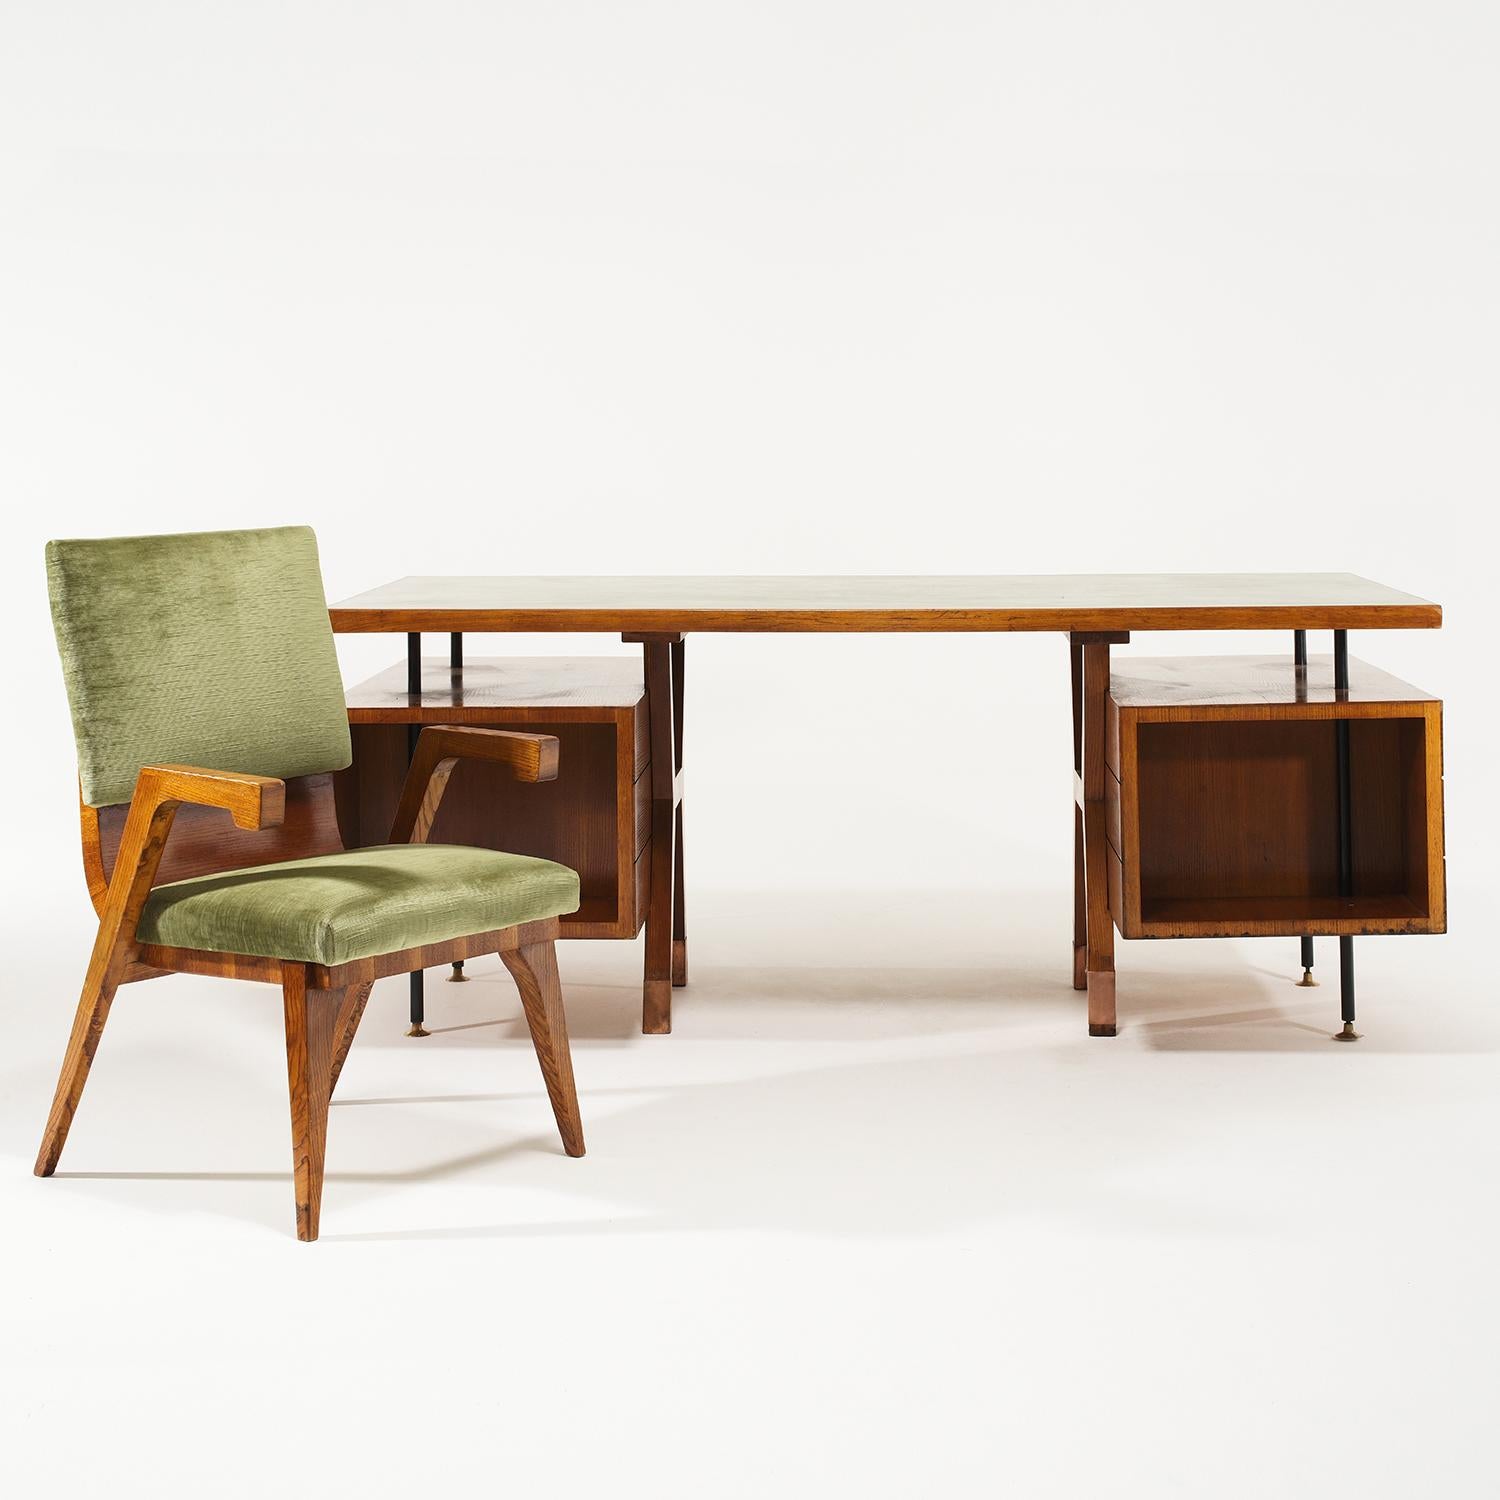 Ein Vintage Mid-Century modernes italienisches Büro-Set bestehend aus einem Schreibtisch und einem Sessel aus handgefertigtem poliertem Nussbaum, entworfen von Amleto Sartori in gutem Zustand. Die schwimmende rechteckige Platte ist aus handbemaltem,